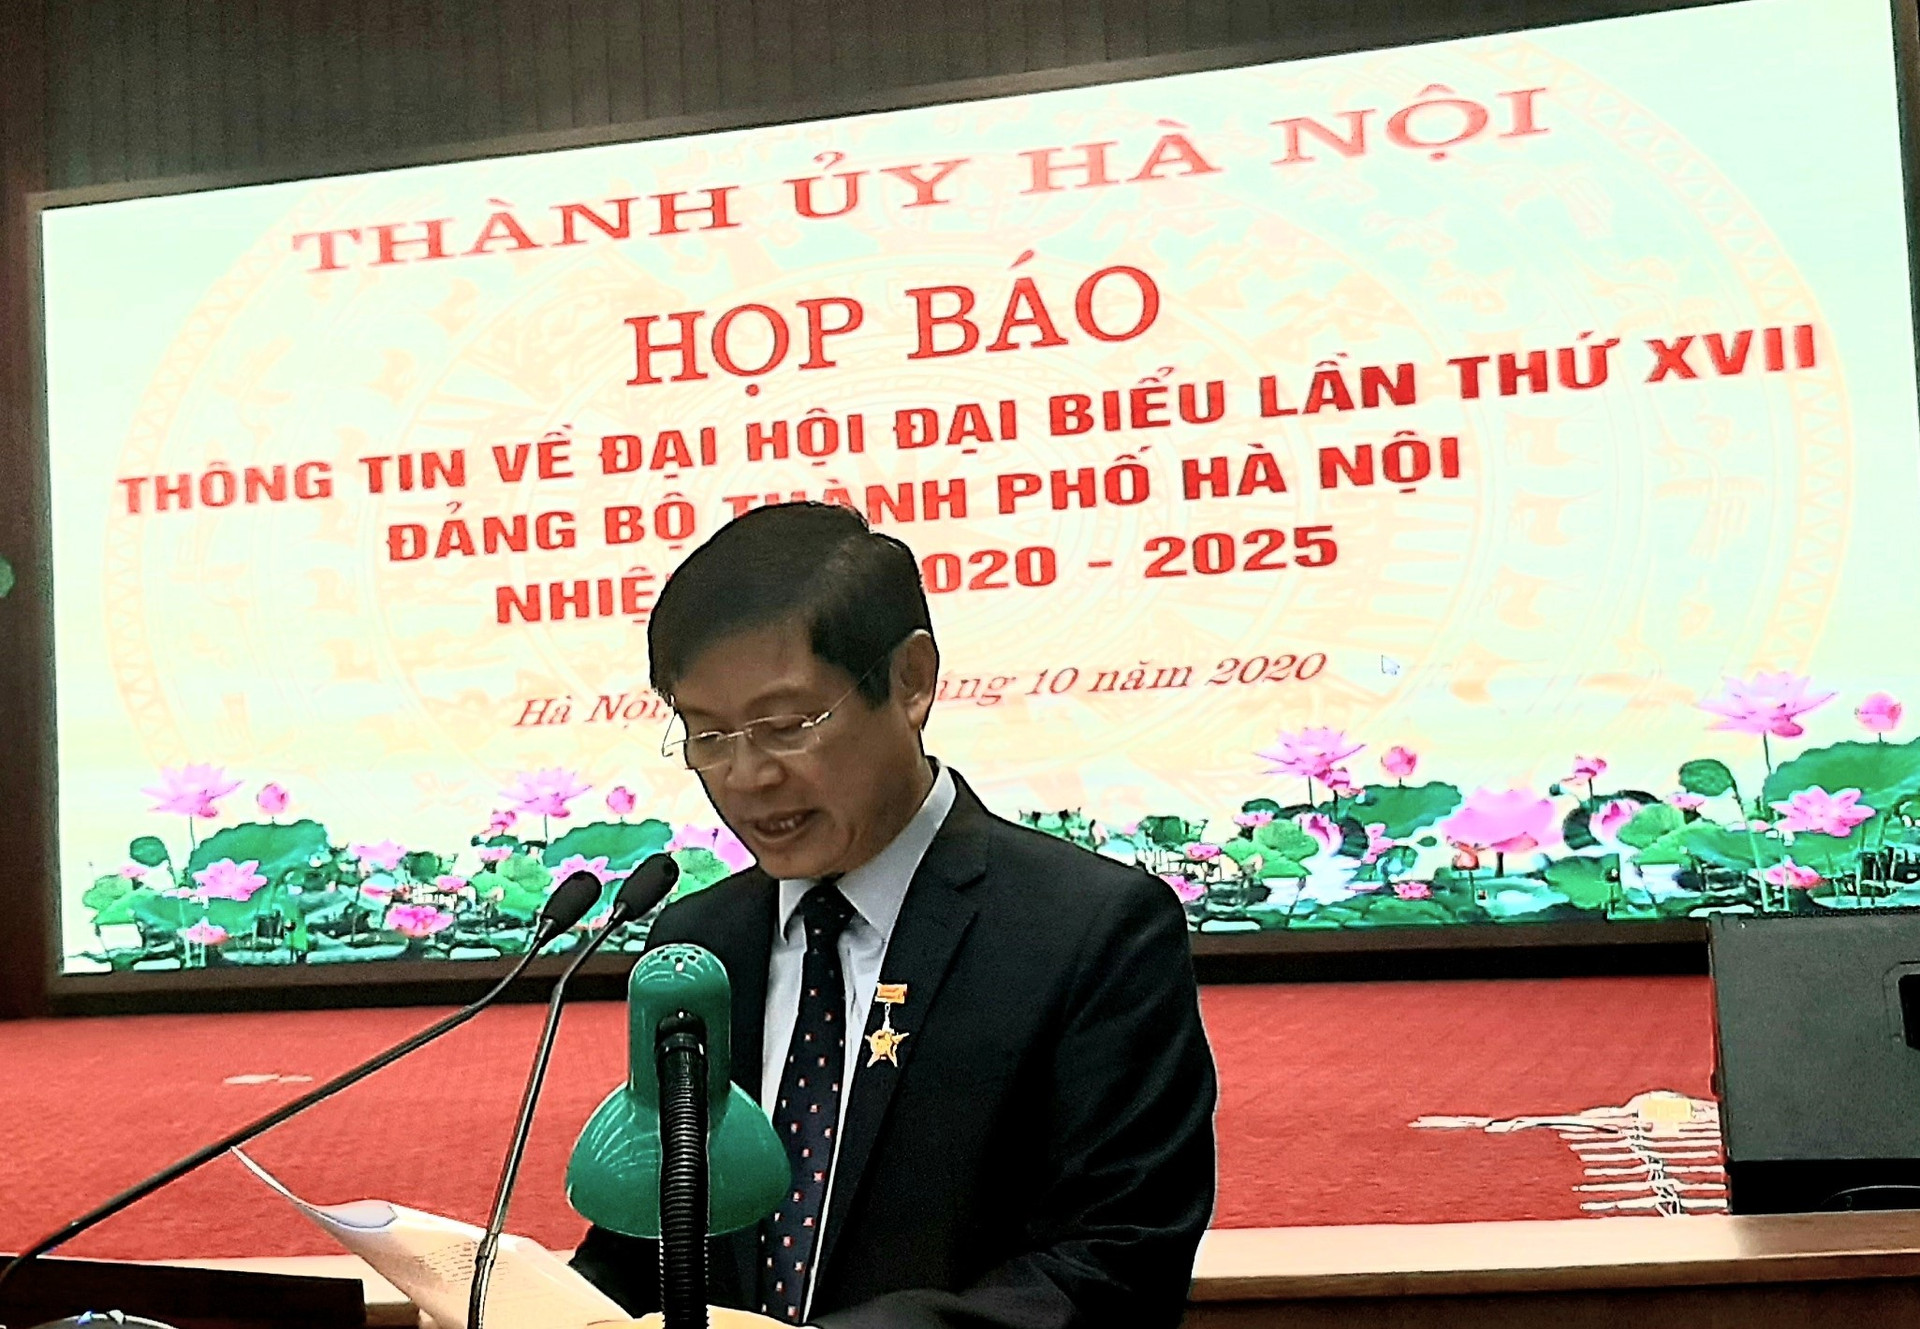 Đại hội đại biểu lần thứ XVII Đảng bộ thành phố Hà Nội diễn ra từ ngày 11-13/10